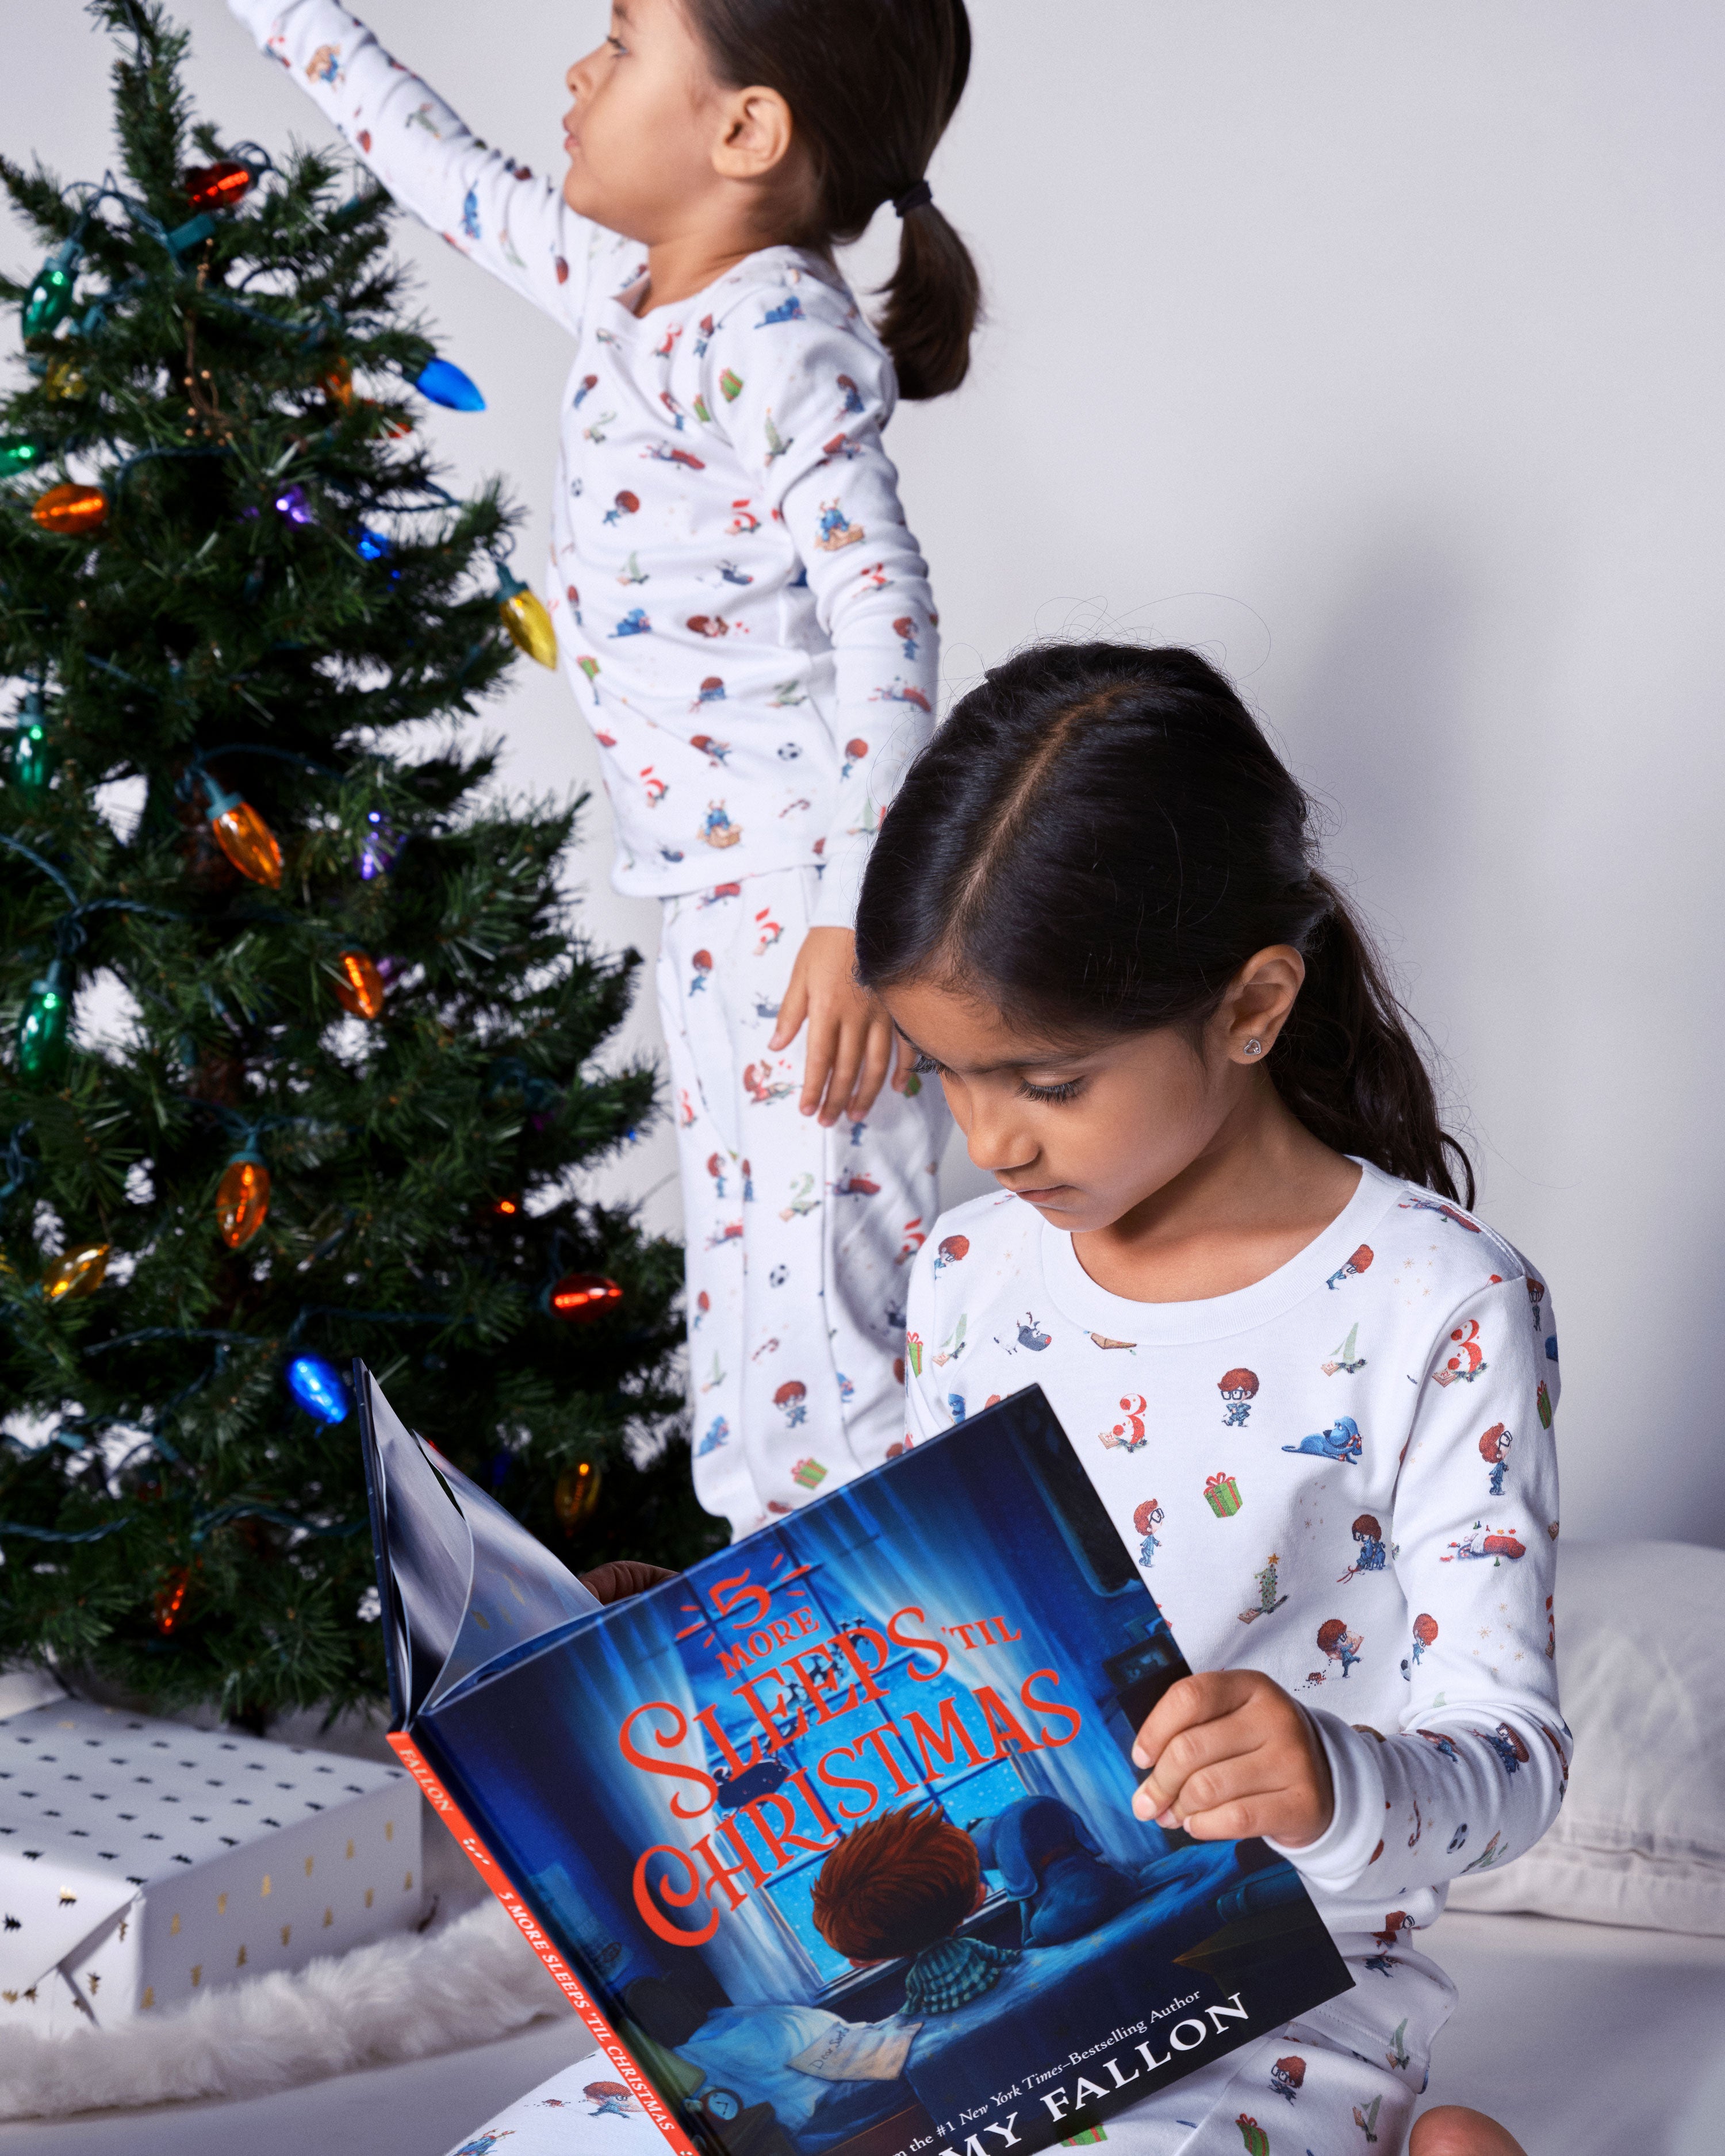 The Organic Long Sleeve Pajama and Book Gift Set 5 More Sleeps 'til Christmas